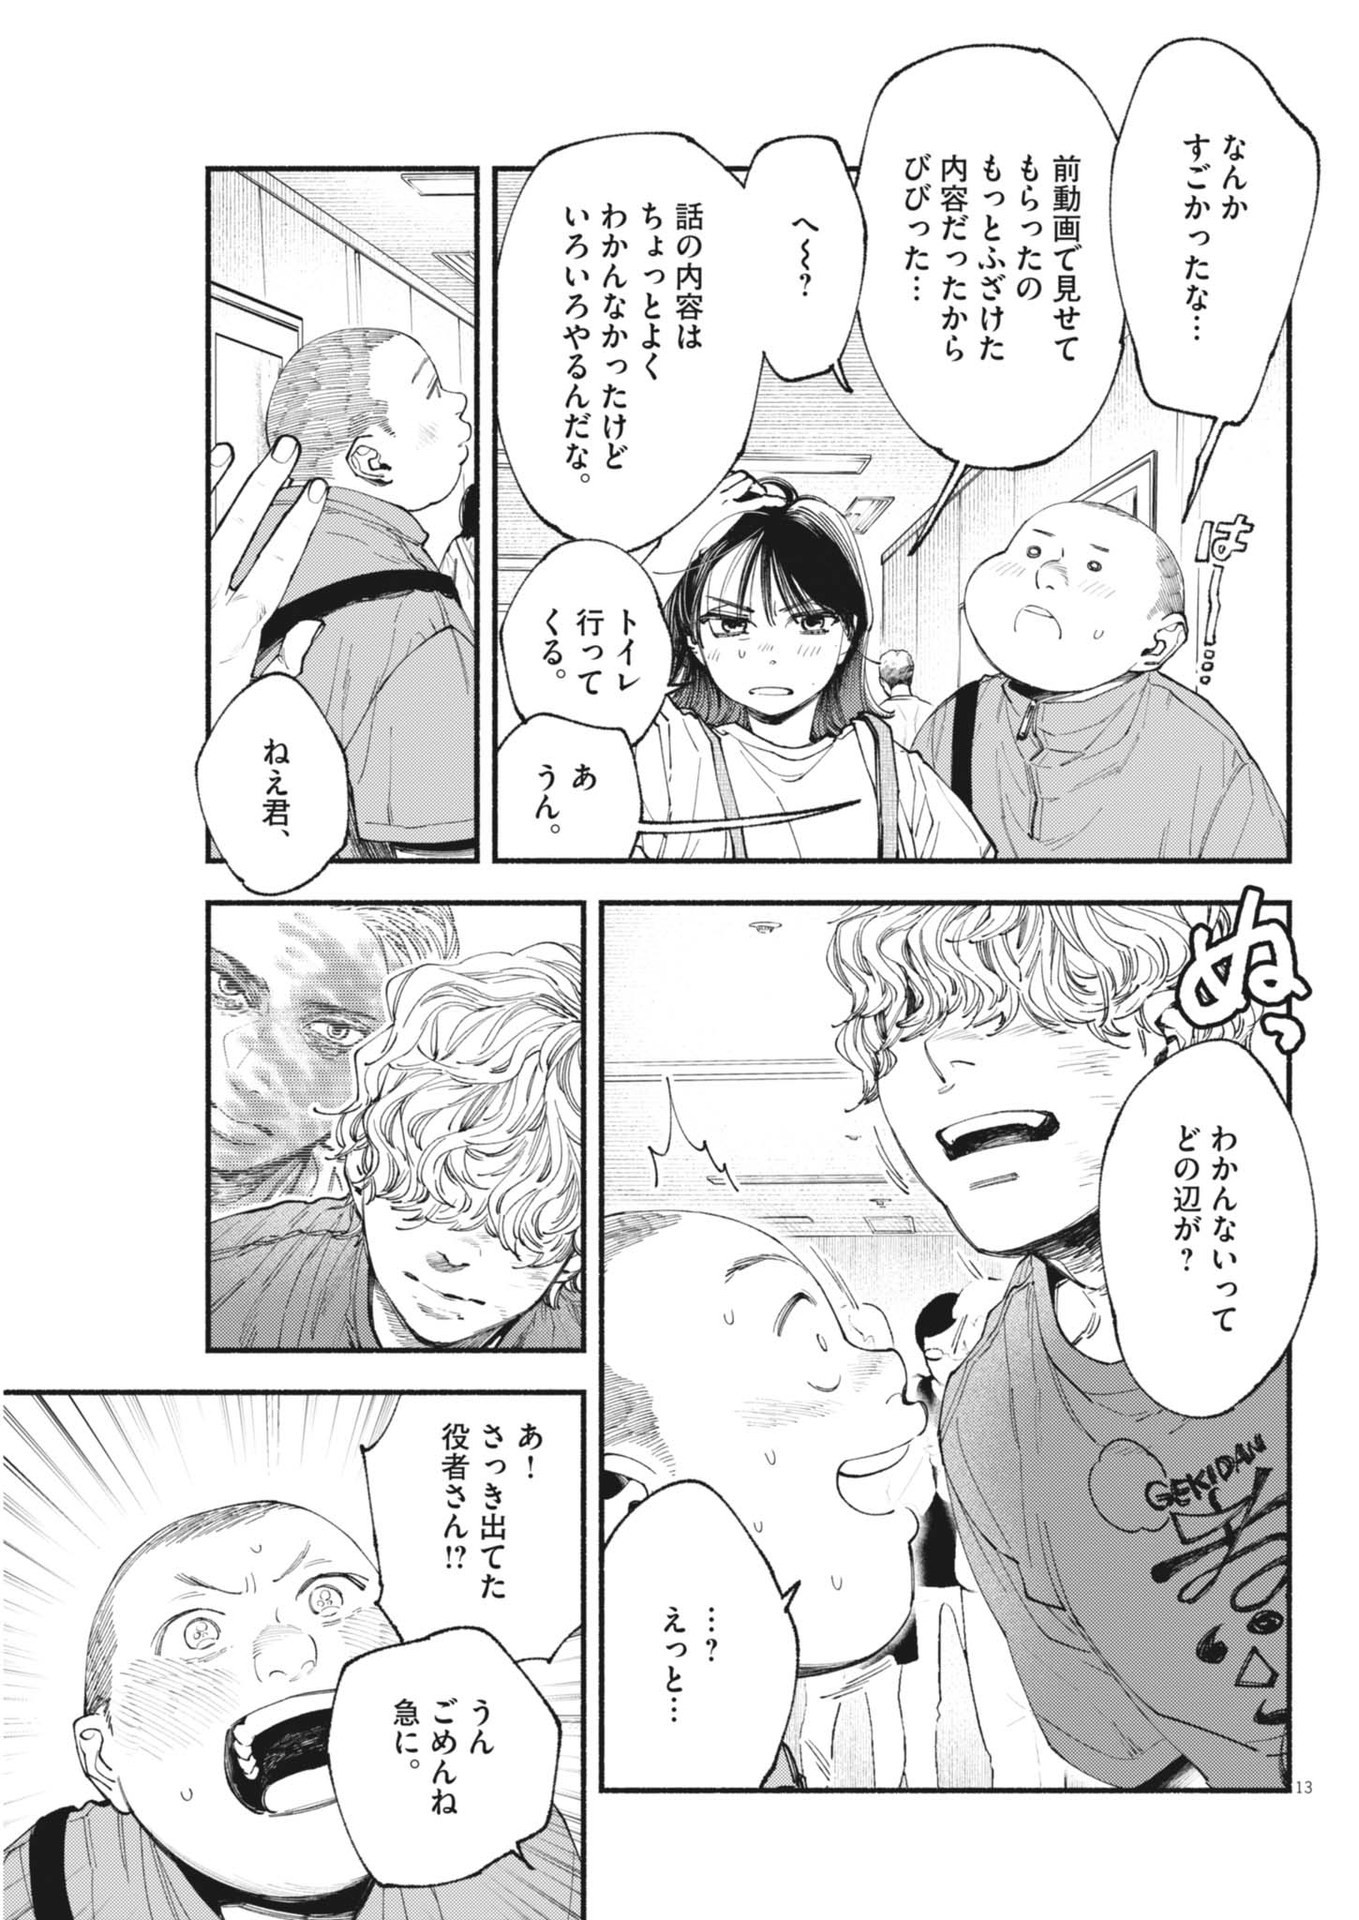 Konoyo wa Tatakau Kachi ga Aru  - Chapter 27 - Page 13